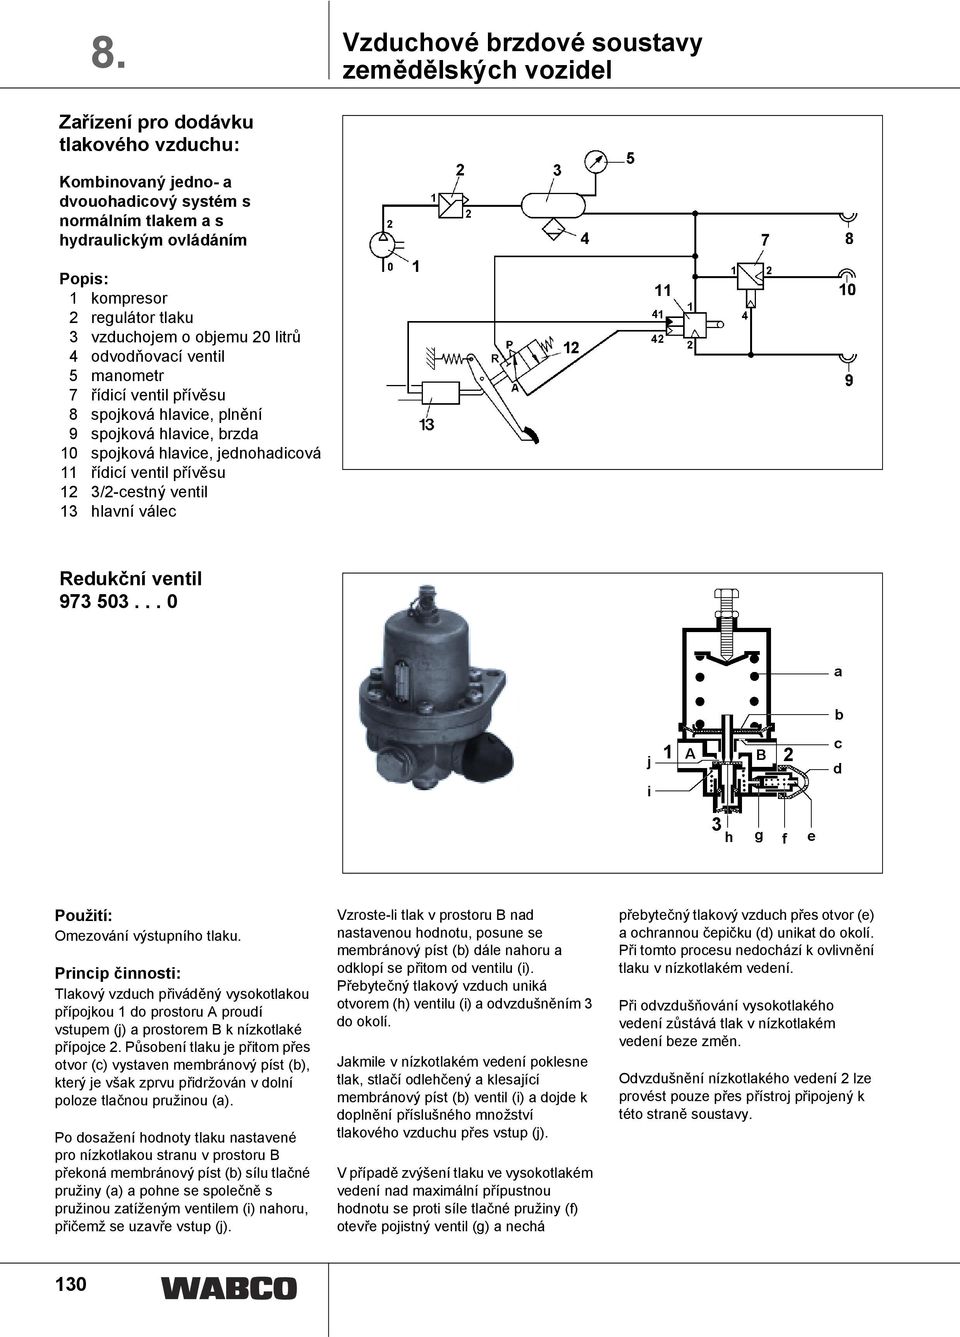 řídicí ventil přívěsu 12 3/2-cestný ventil 13 hlavní válec Redukční ventil 973 503... 0 Použití: Omezování výstupního tlaku.